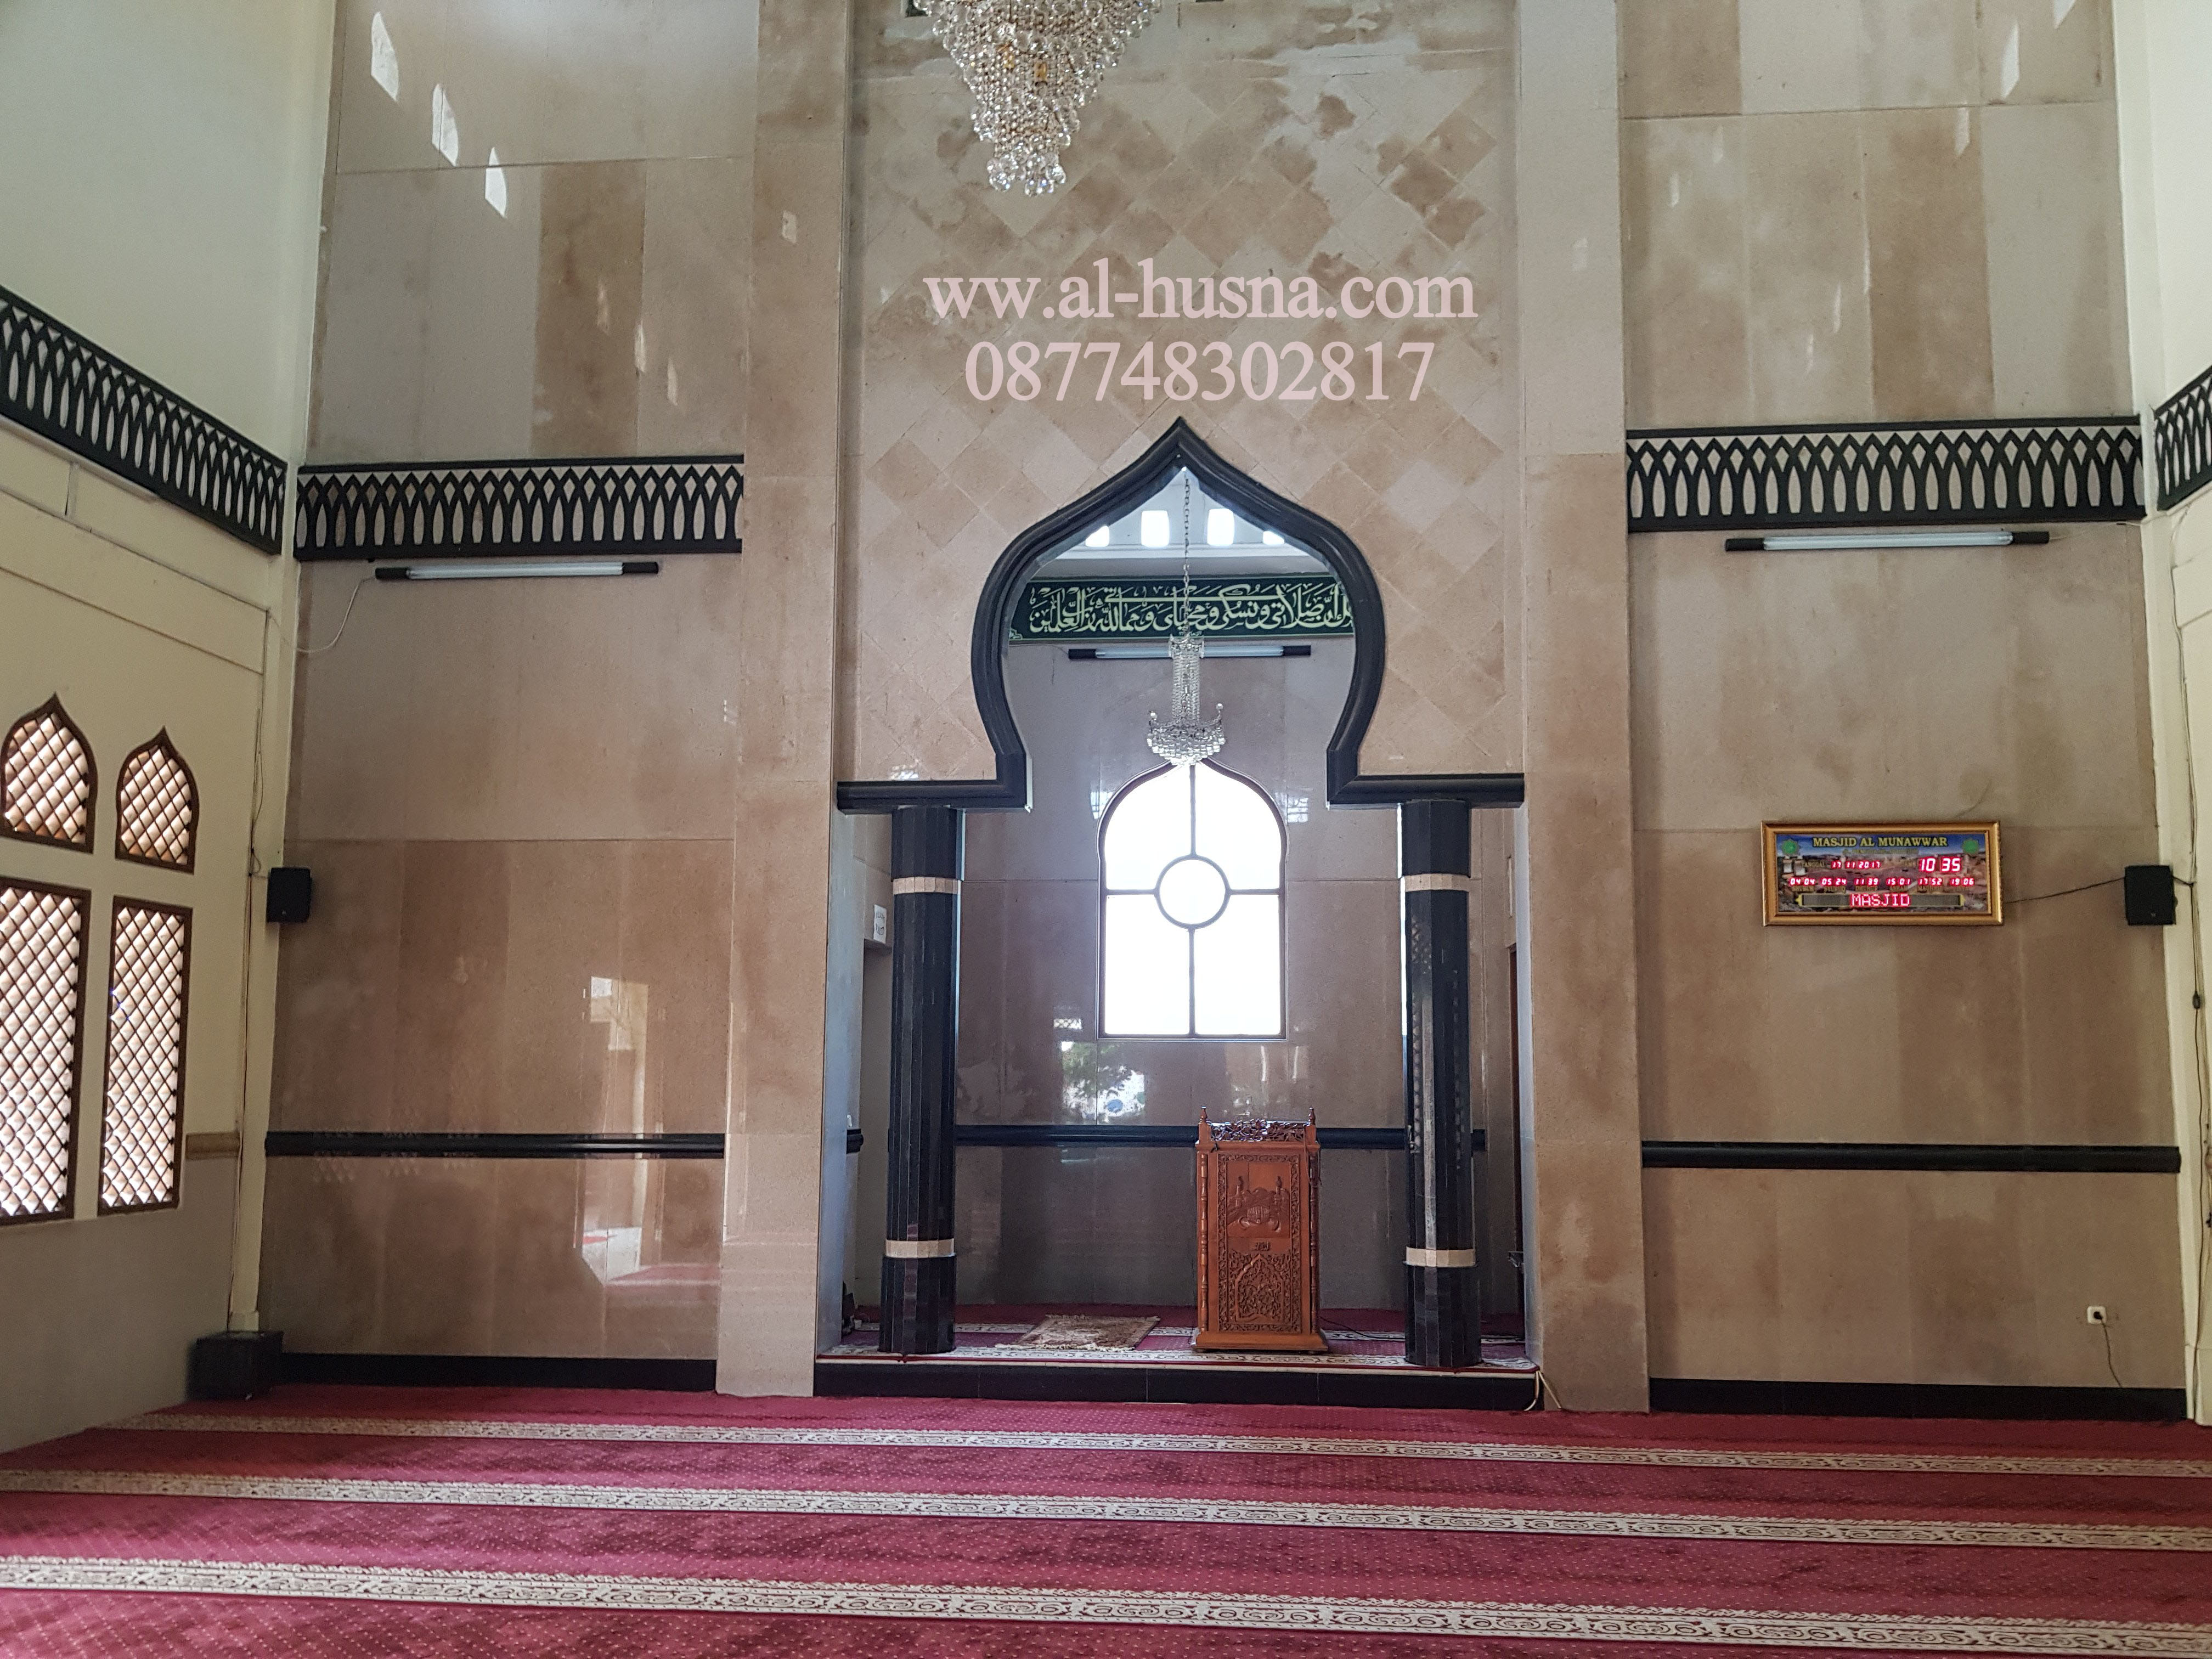 Daftar Harga Karpet Masjid Di Karangsatu Bekasi-